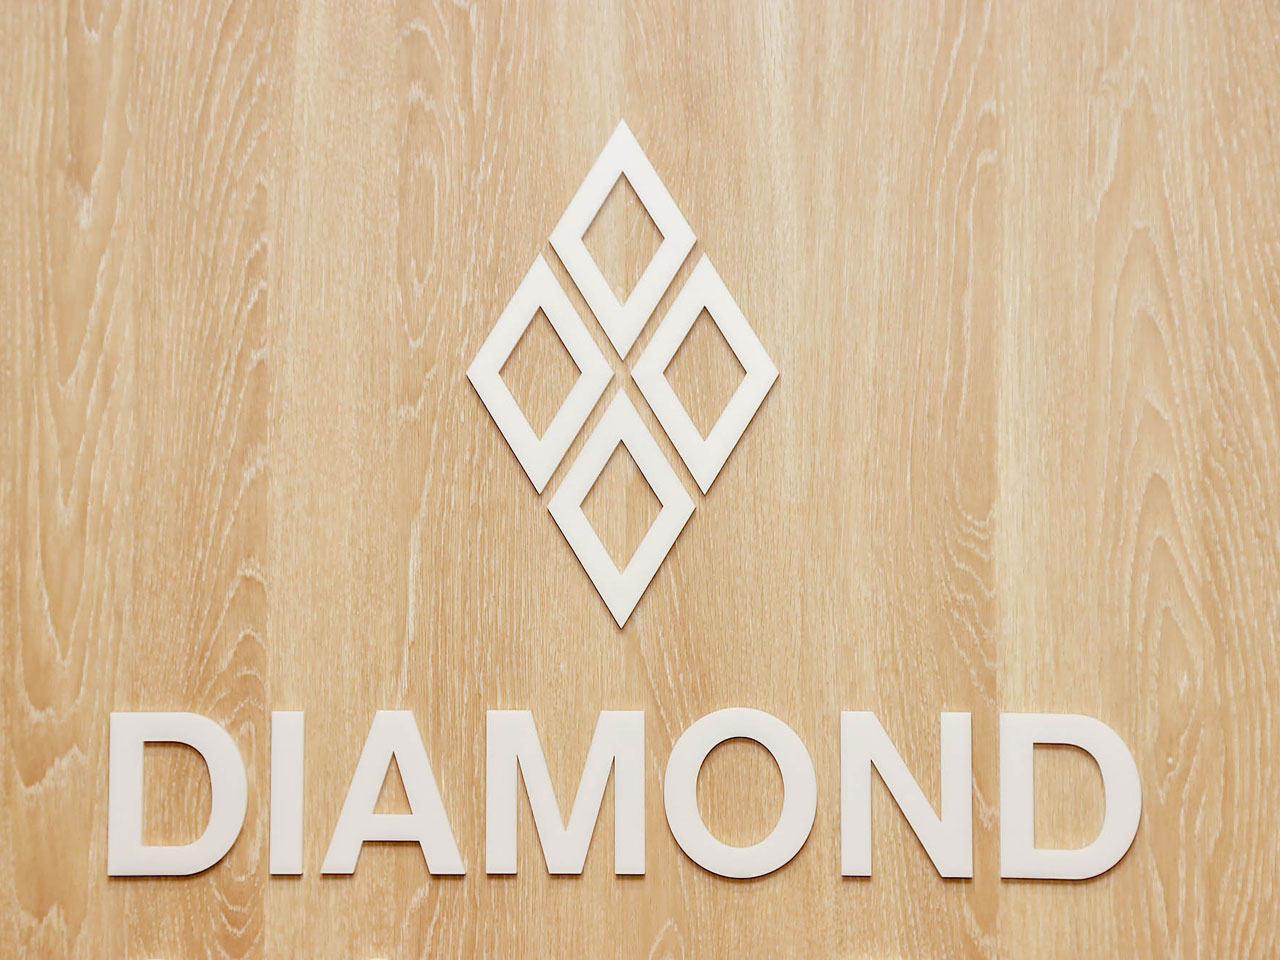 経済・ビジネス系に強みを持つ出版社、株式会社ダイヤモンド社の100%子会社。